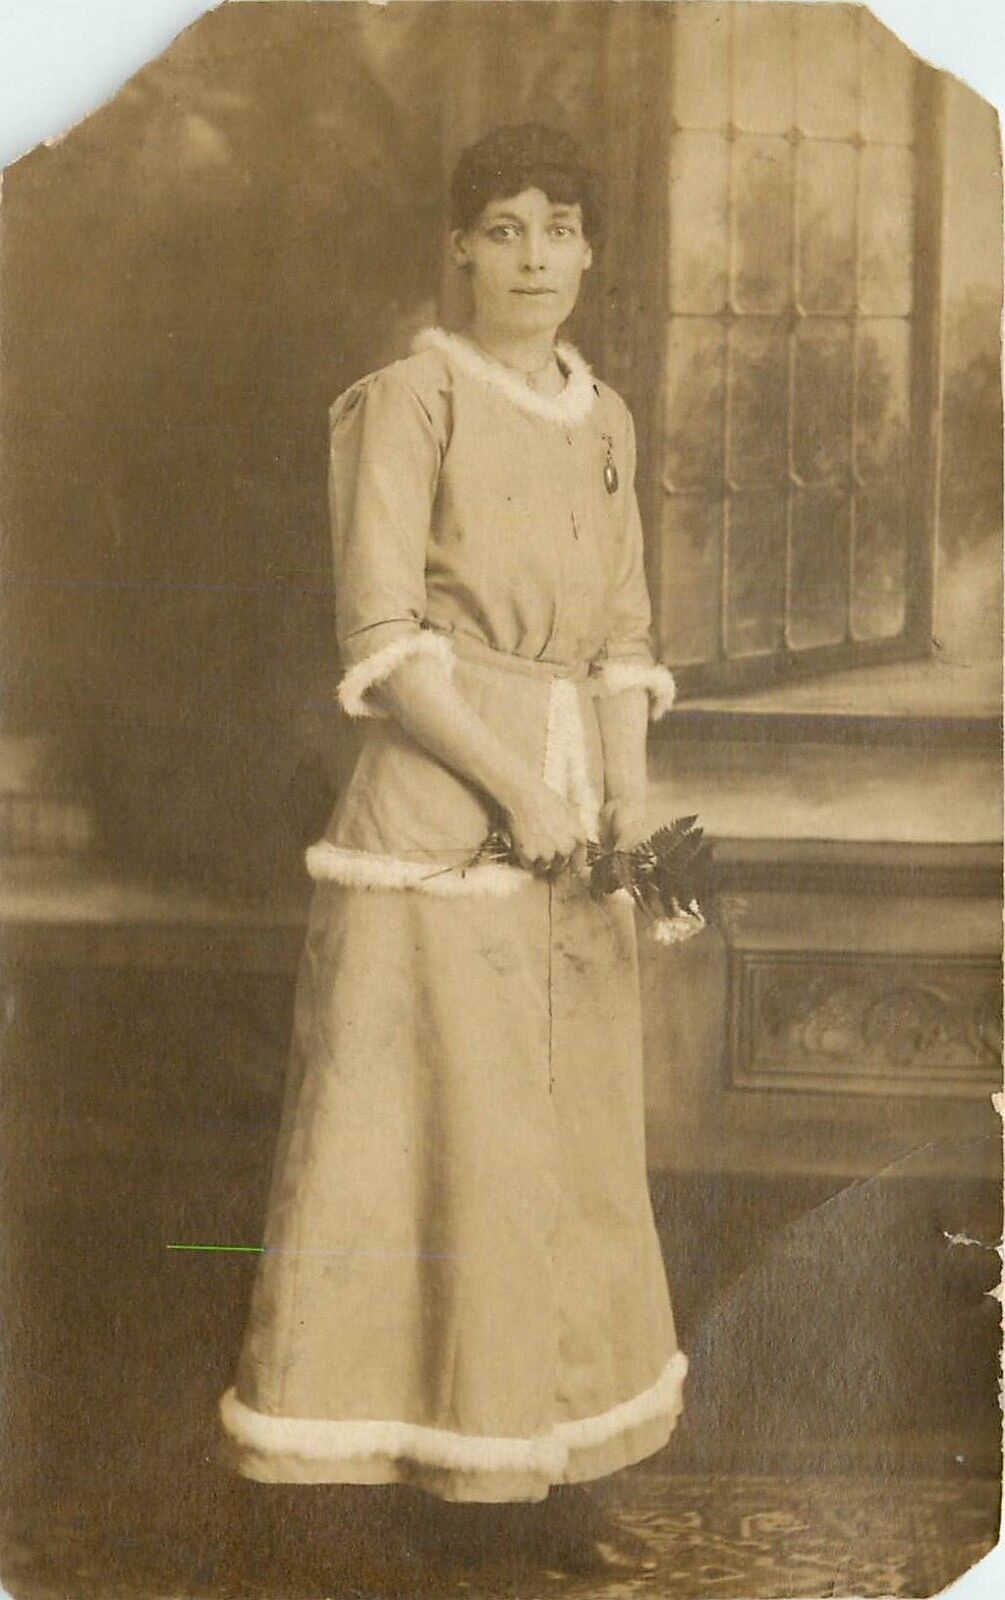 B&W Portrait Woman with Flower Fuzzy Trimmed Dress by Window RPPC Postcard